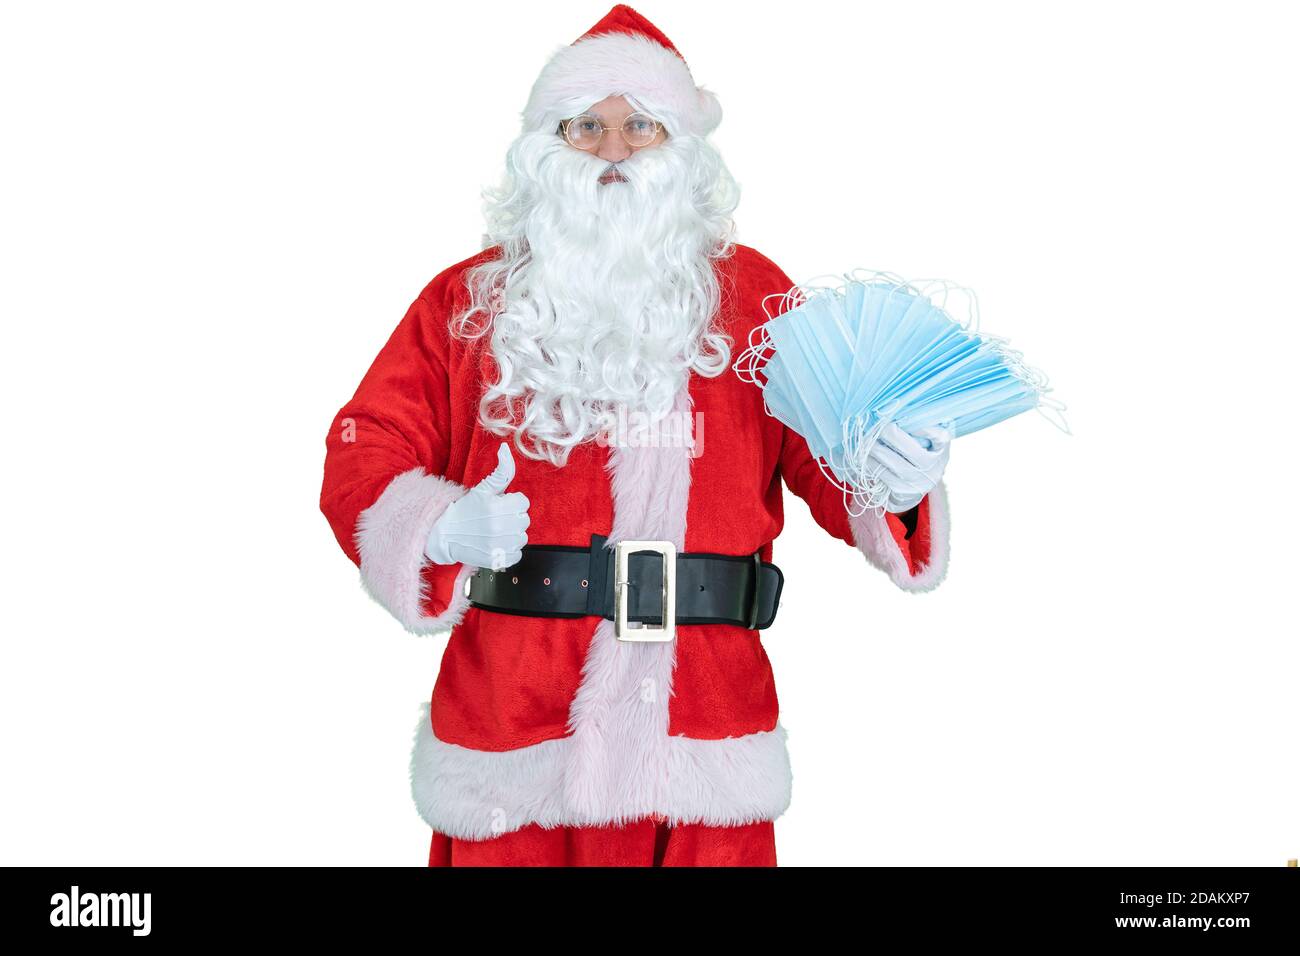 Santa Claus trägt eine covid medizinische Maske, hält Maske oder Atemschutzmasken Epidemie oder Coronavirus Schutz. Der Weihnachtsmann zeigt den Daumen nach oben Stockfoto